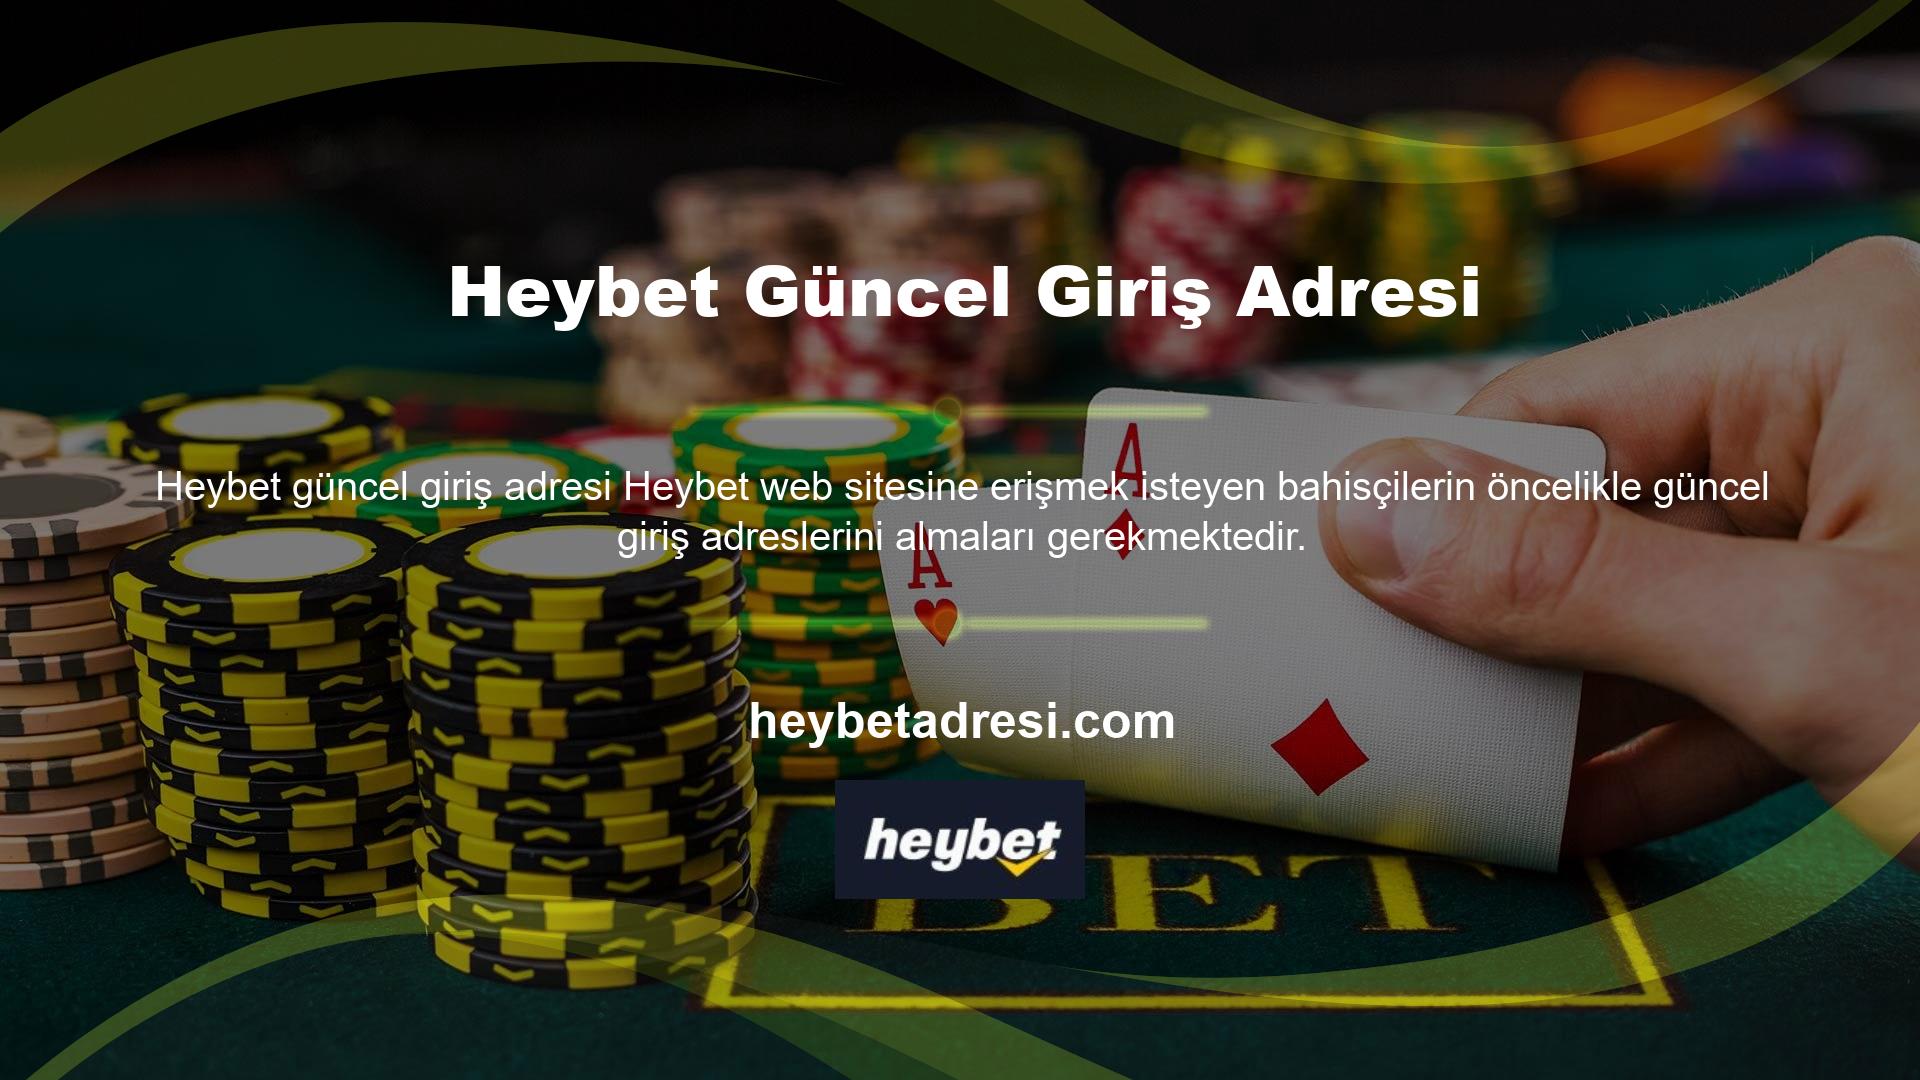 Türkiye'de online casino sitelerinin faaliyet göstermesine izin verilmediğinden, sitenin ve kullanıcılarının güvenliğinin sağlanması amacıyla adresler zaman zaman değiştirilebilir